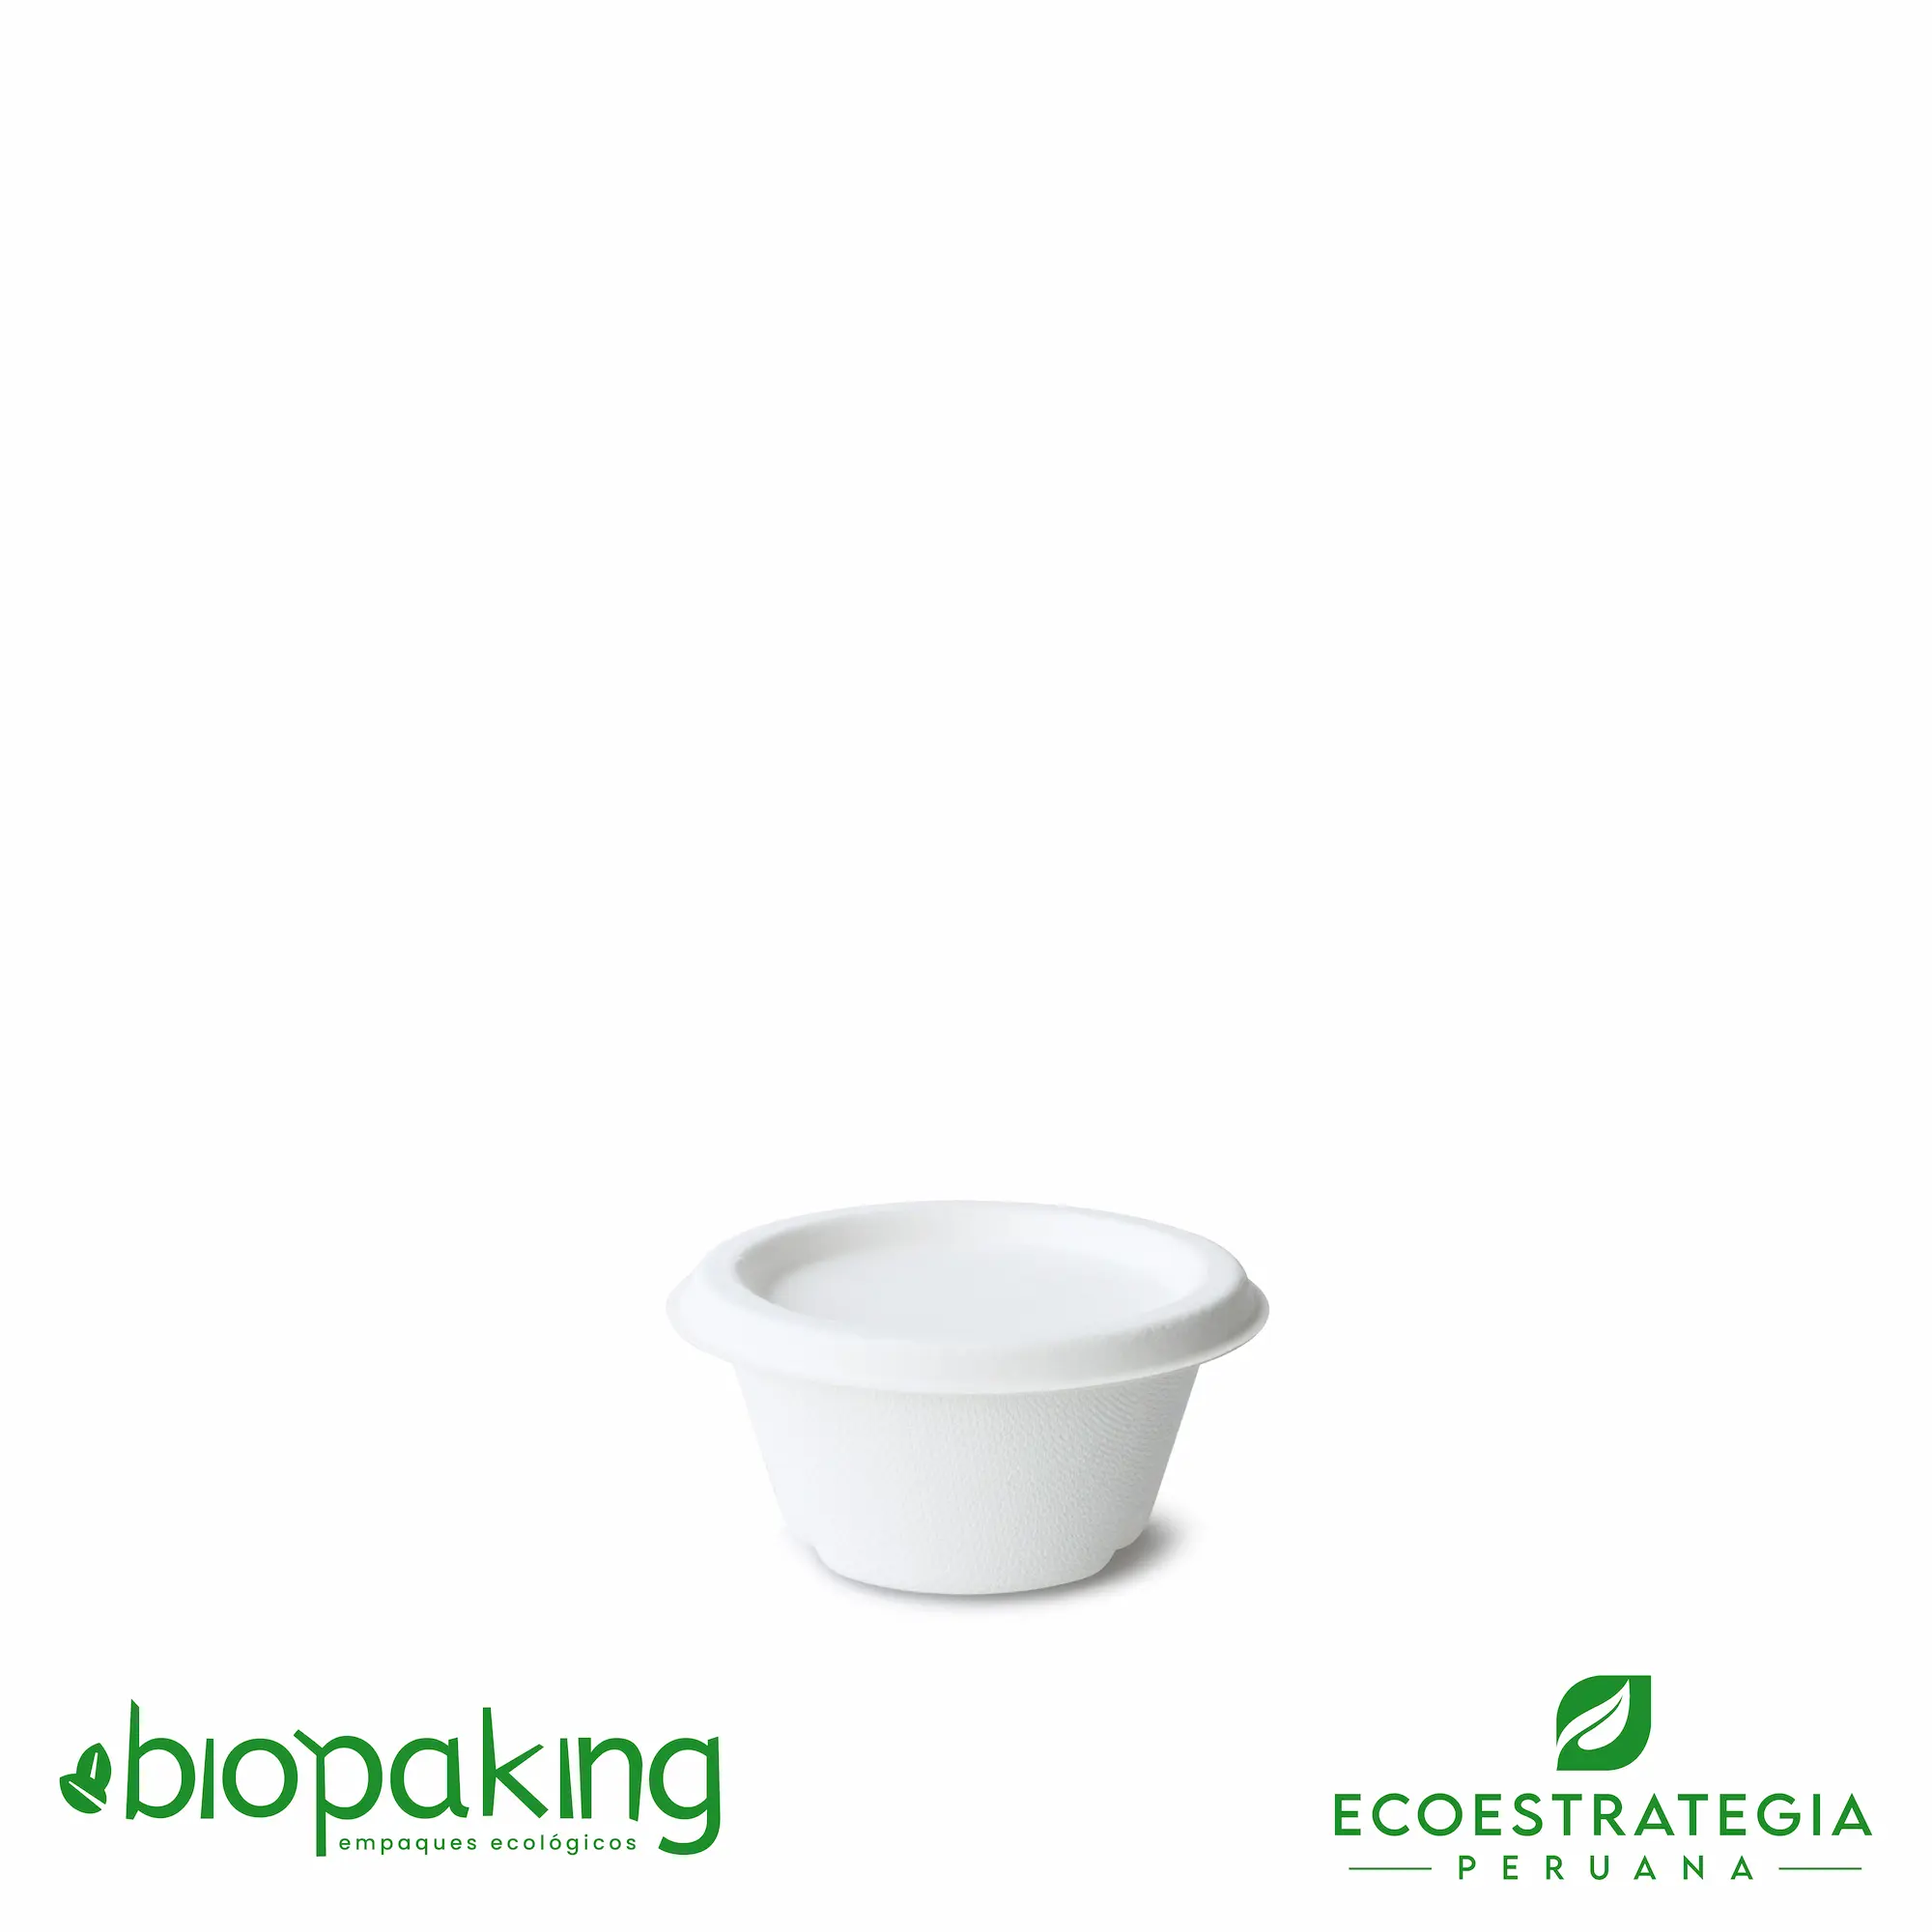 Este envase para cremas de 2oz, es un producto de material biodegradable hecho a base del bagazo de caña de azúcar. Cotiza tus ajiceros, salseros y pirotines.